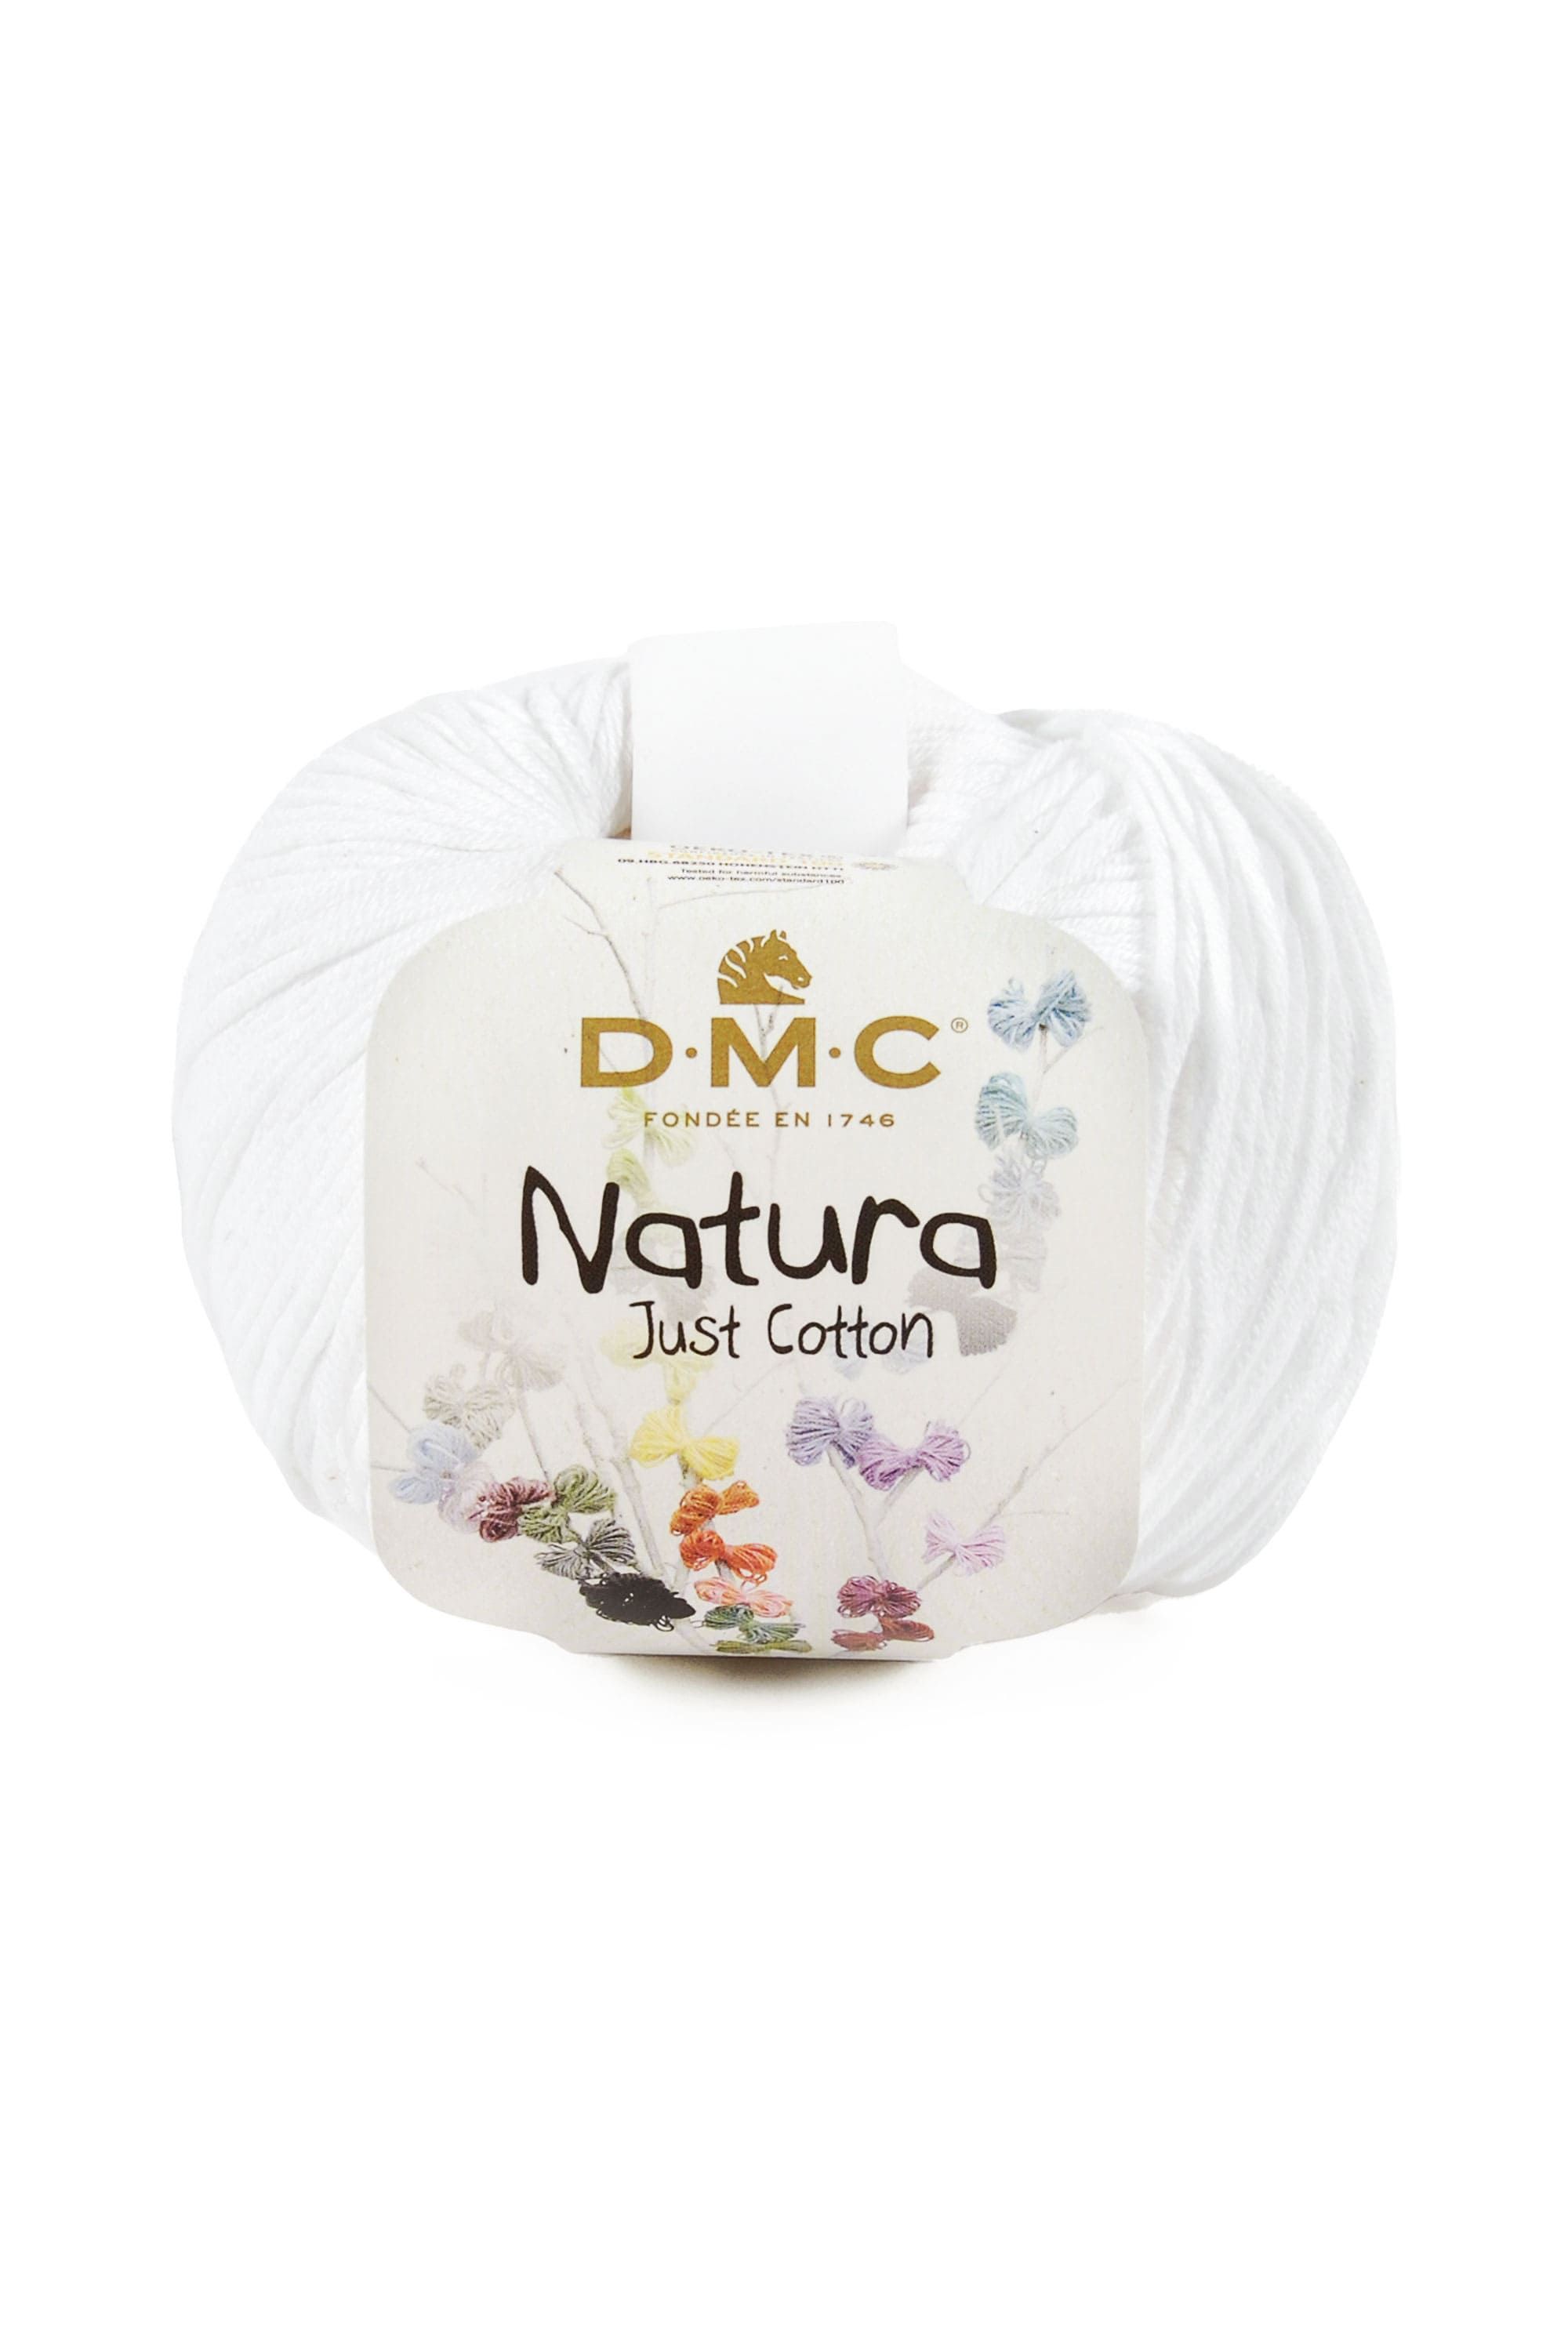 Pelote Natura Glam Just Cotton de DMC